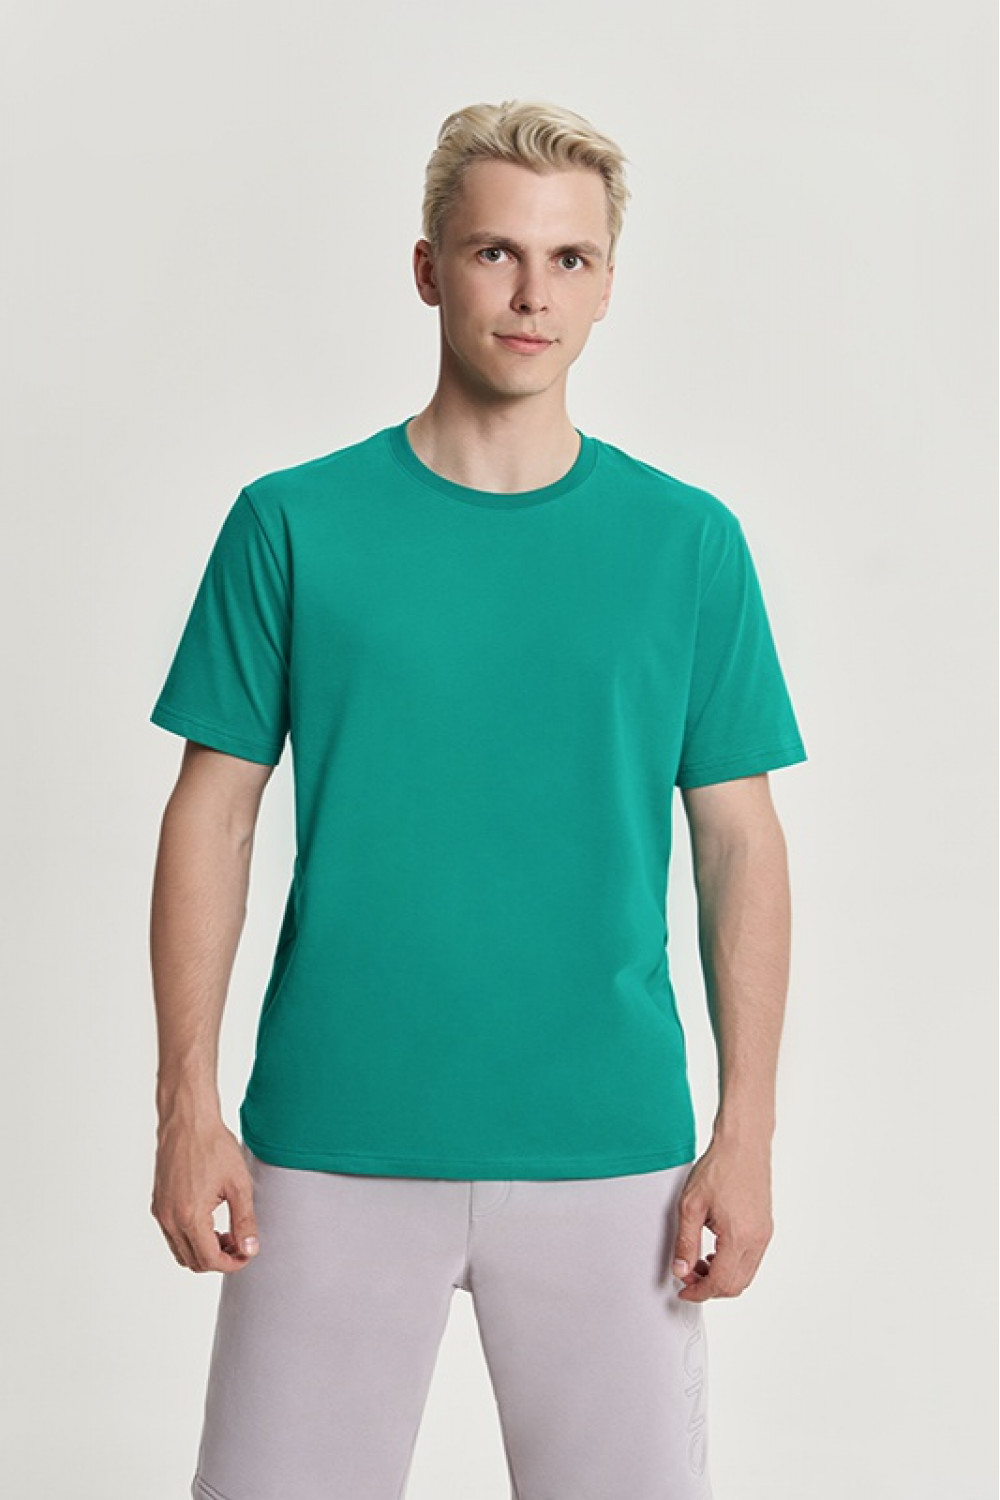 OXO-2205 Хлопковая футболка свободного кроя мужская. мод. 10, коллекция CARBON, OXO UNO